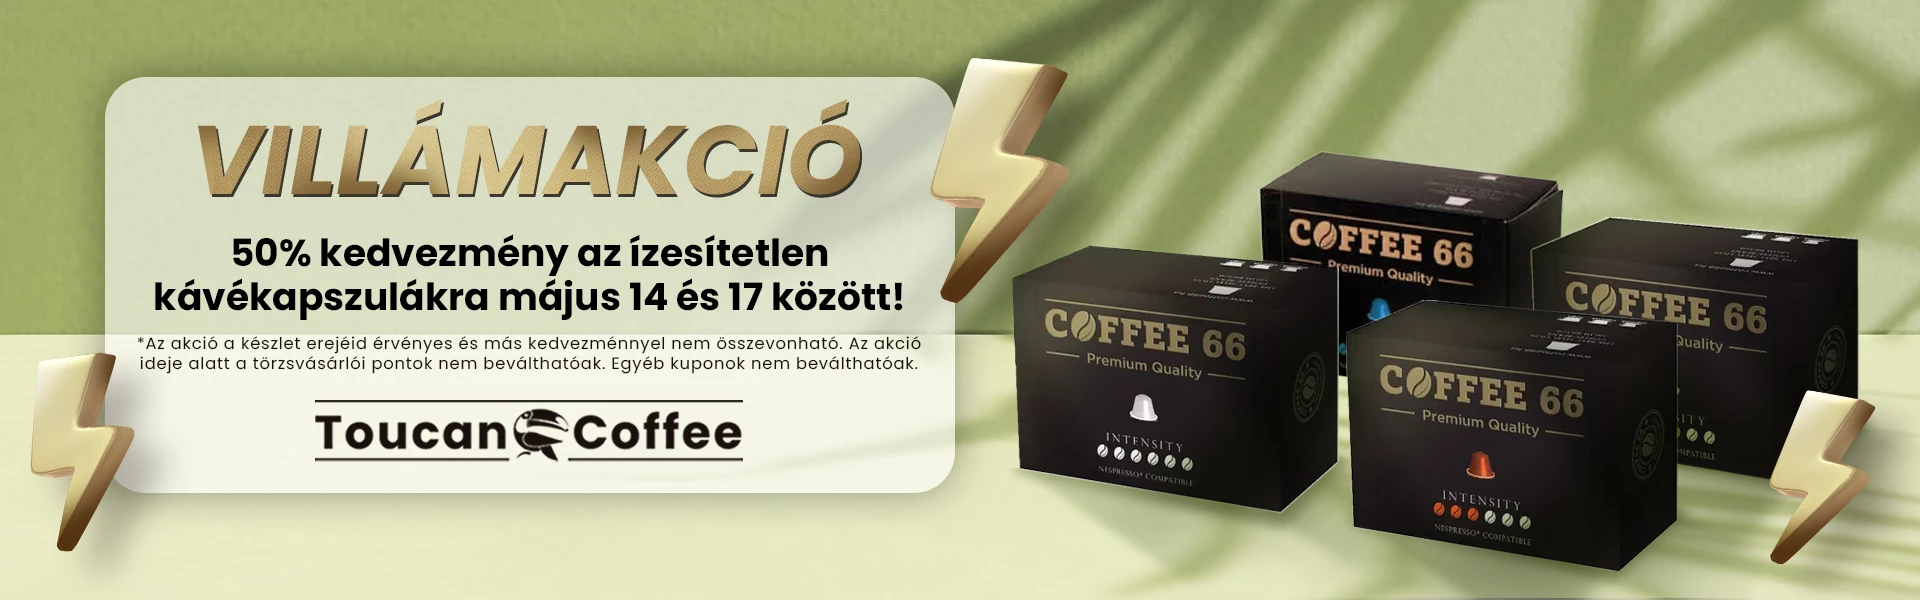 Coffee66.hu